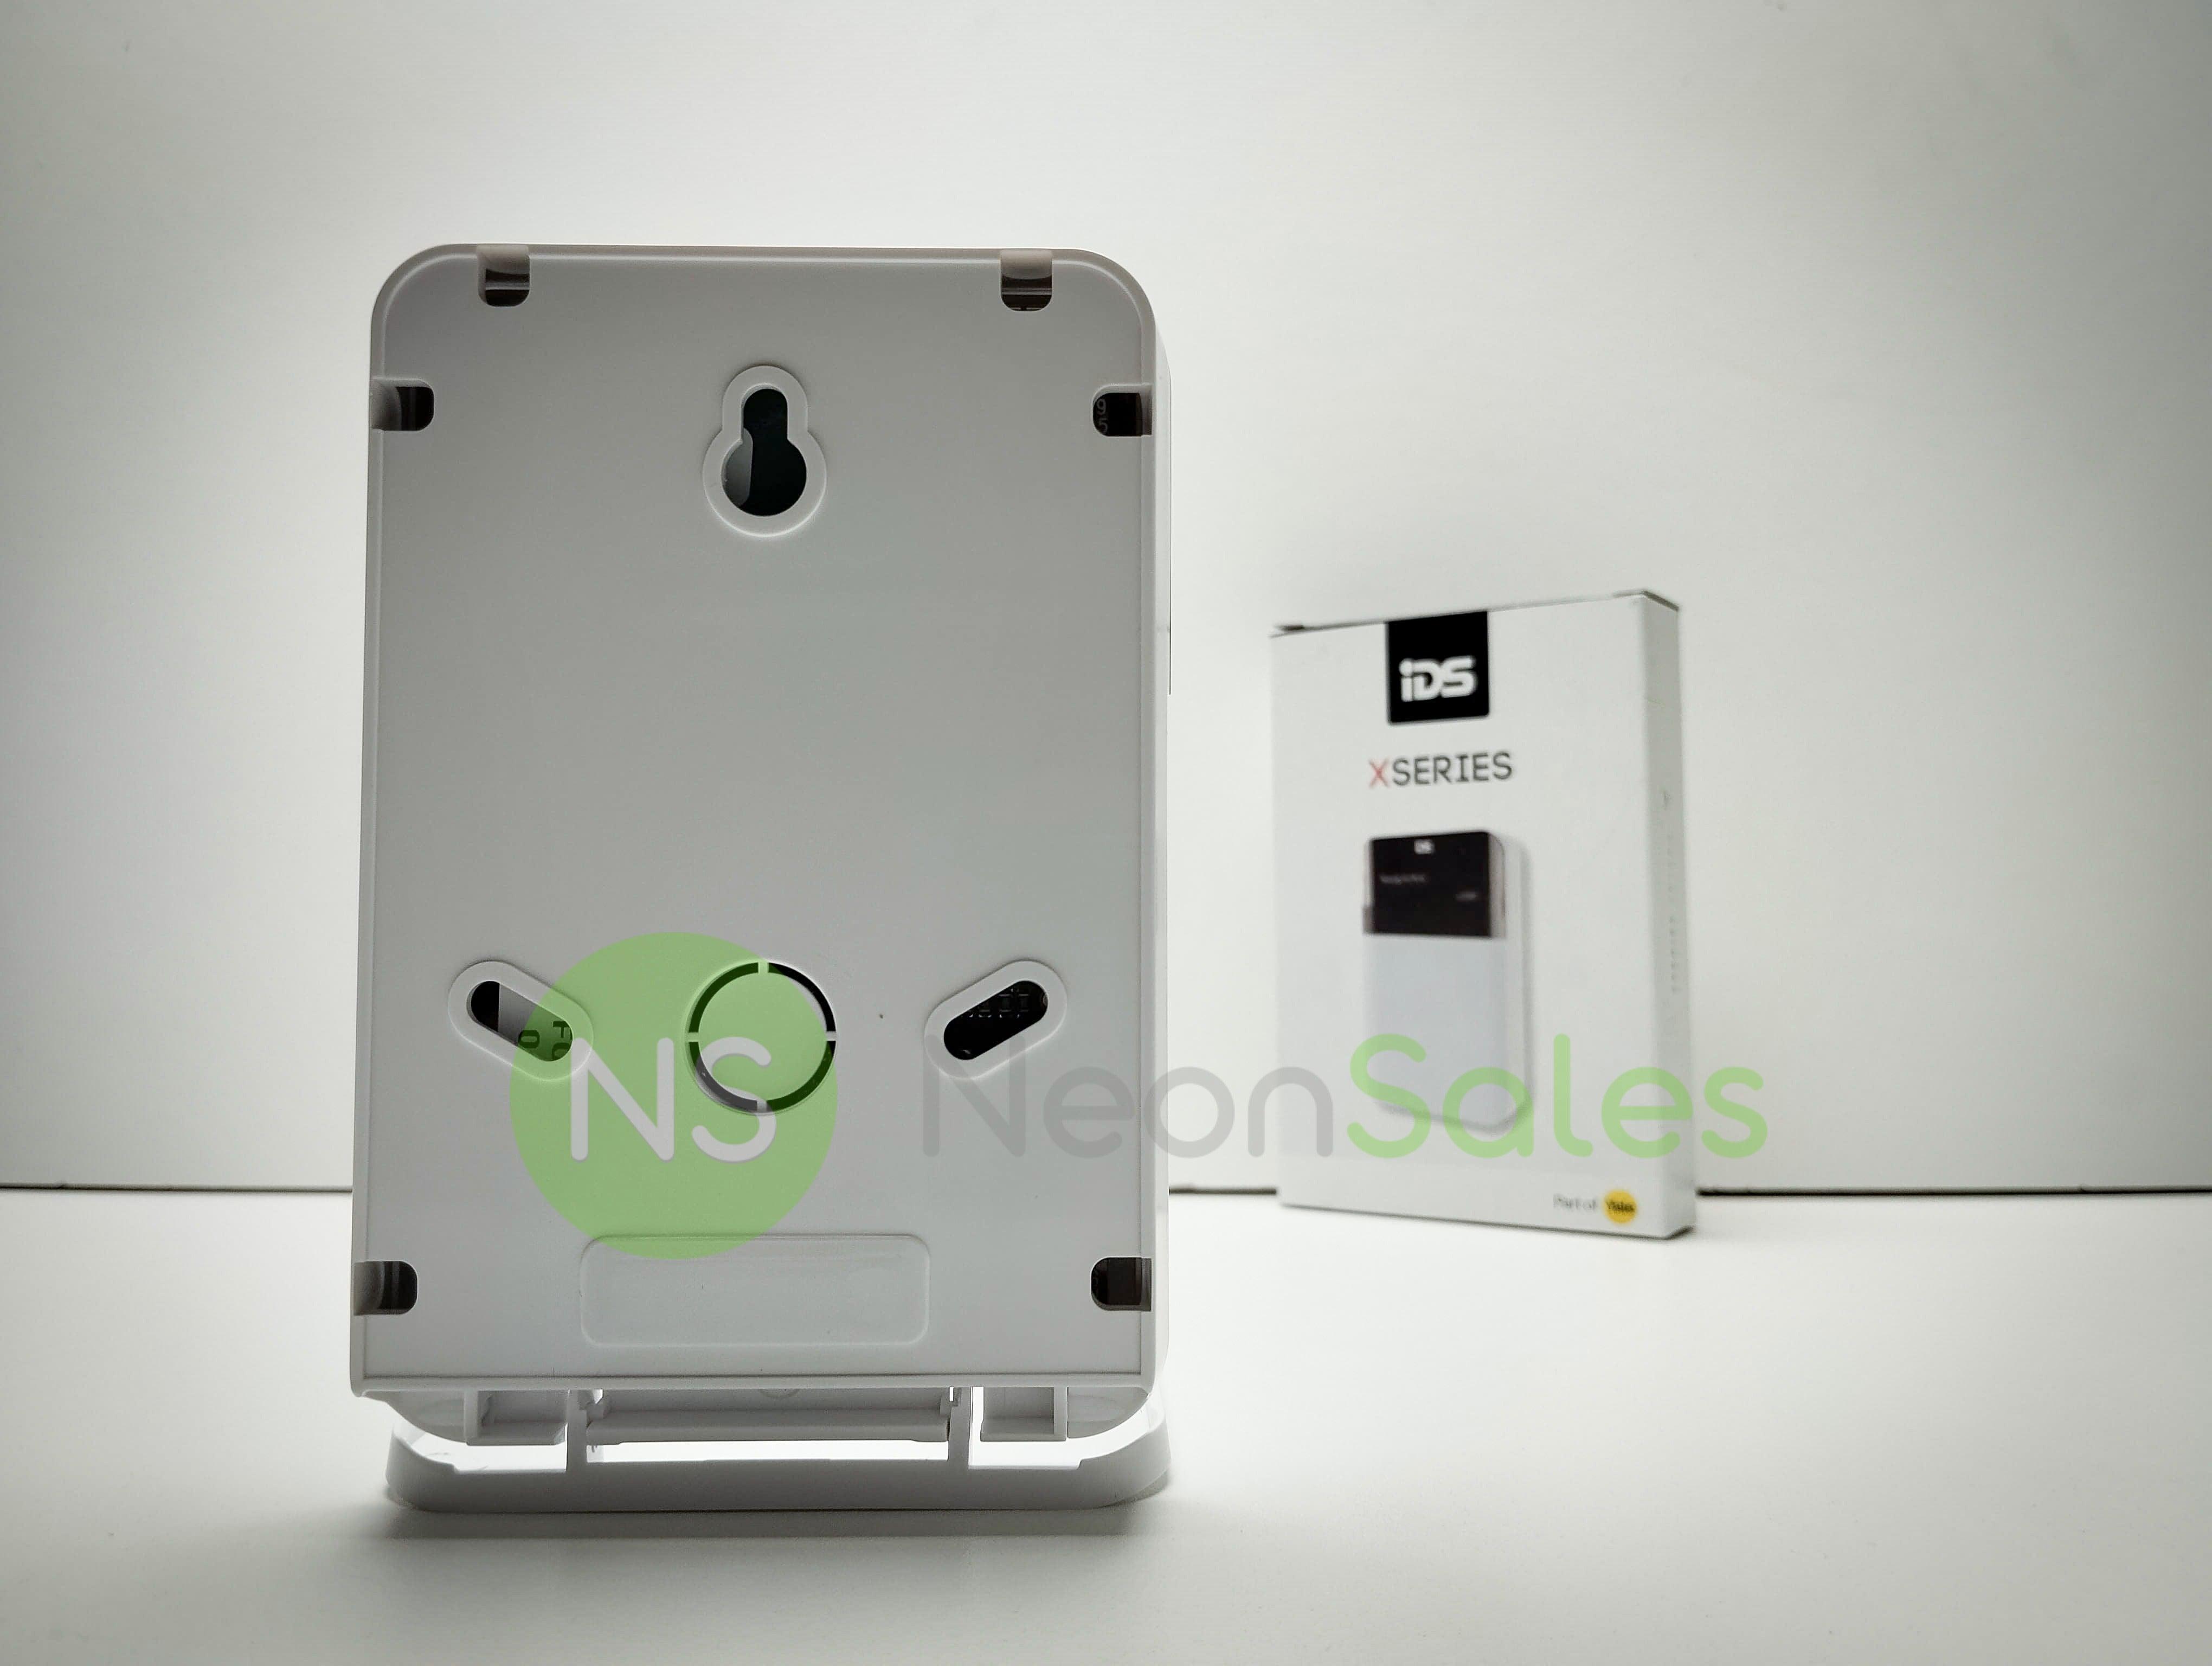 IDS X-SERIES LCD KEYPAD - NeonSales